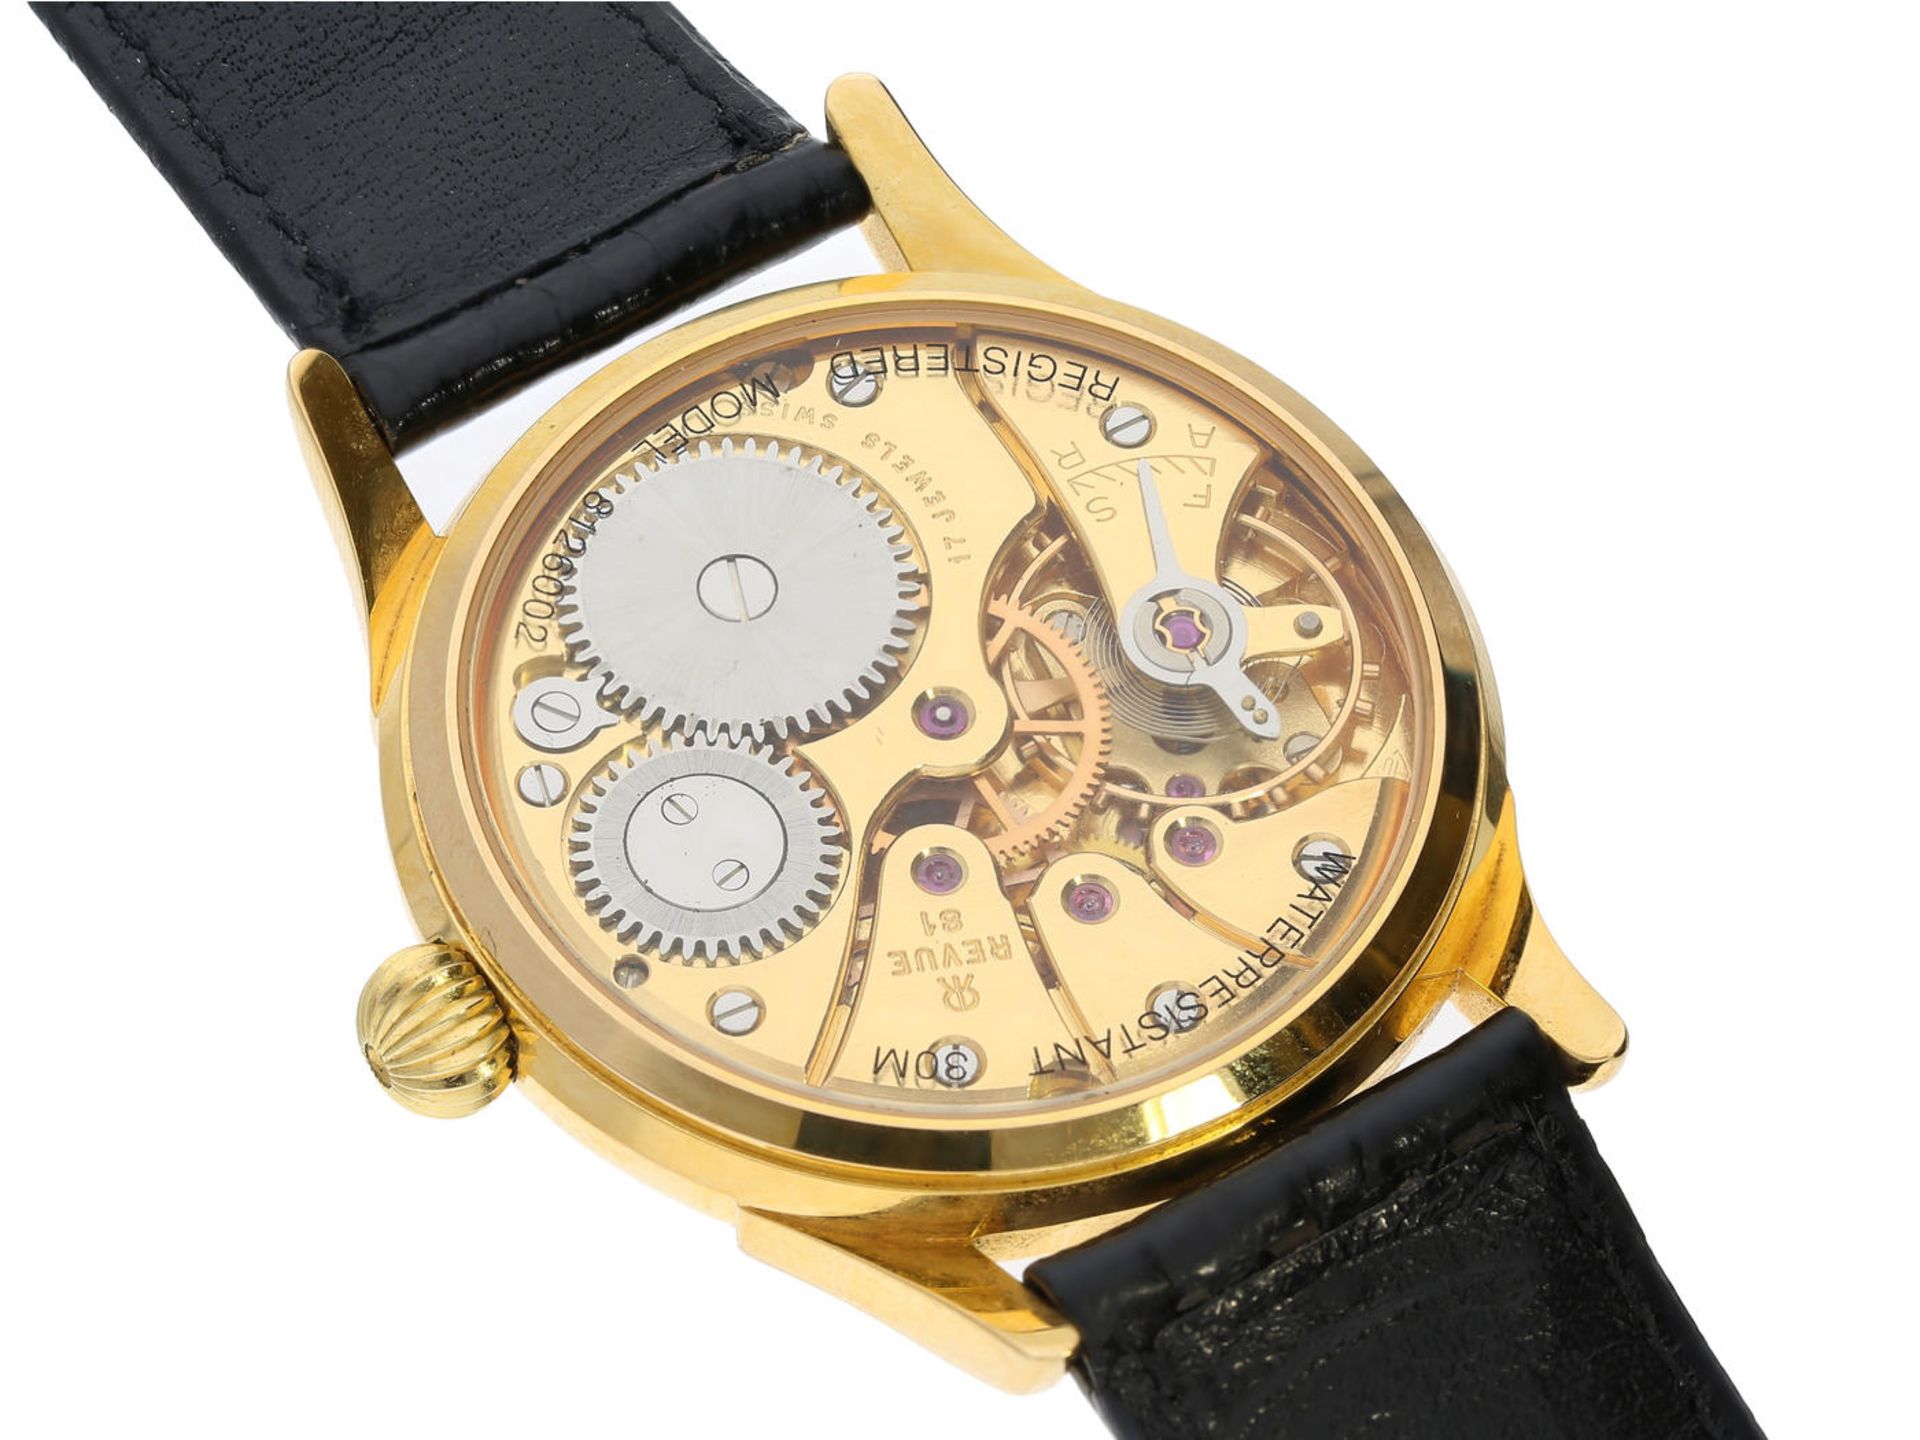 Armbanduhr: Schweizer Herrenuhr der Marke Revue Thommen "Classical" Handaufzug GT1885, um 2000 Ca. - Bild 3 aus 3